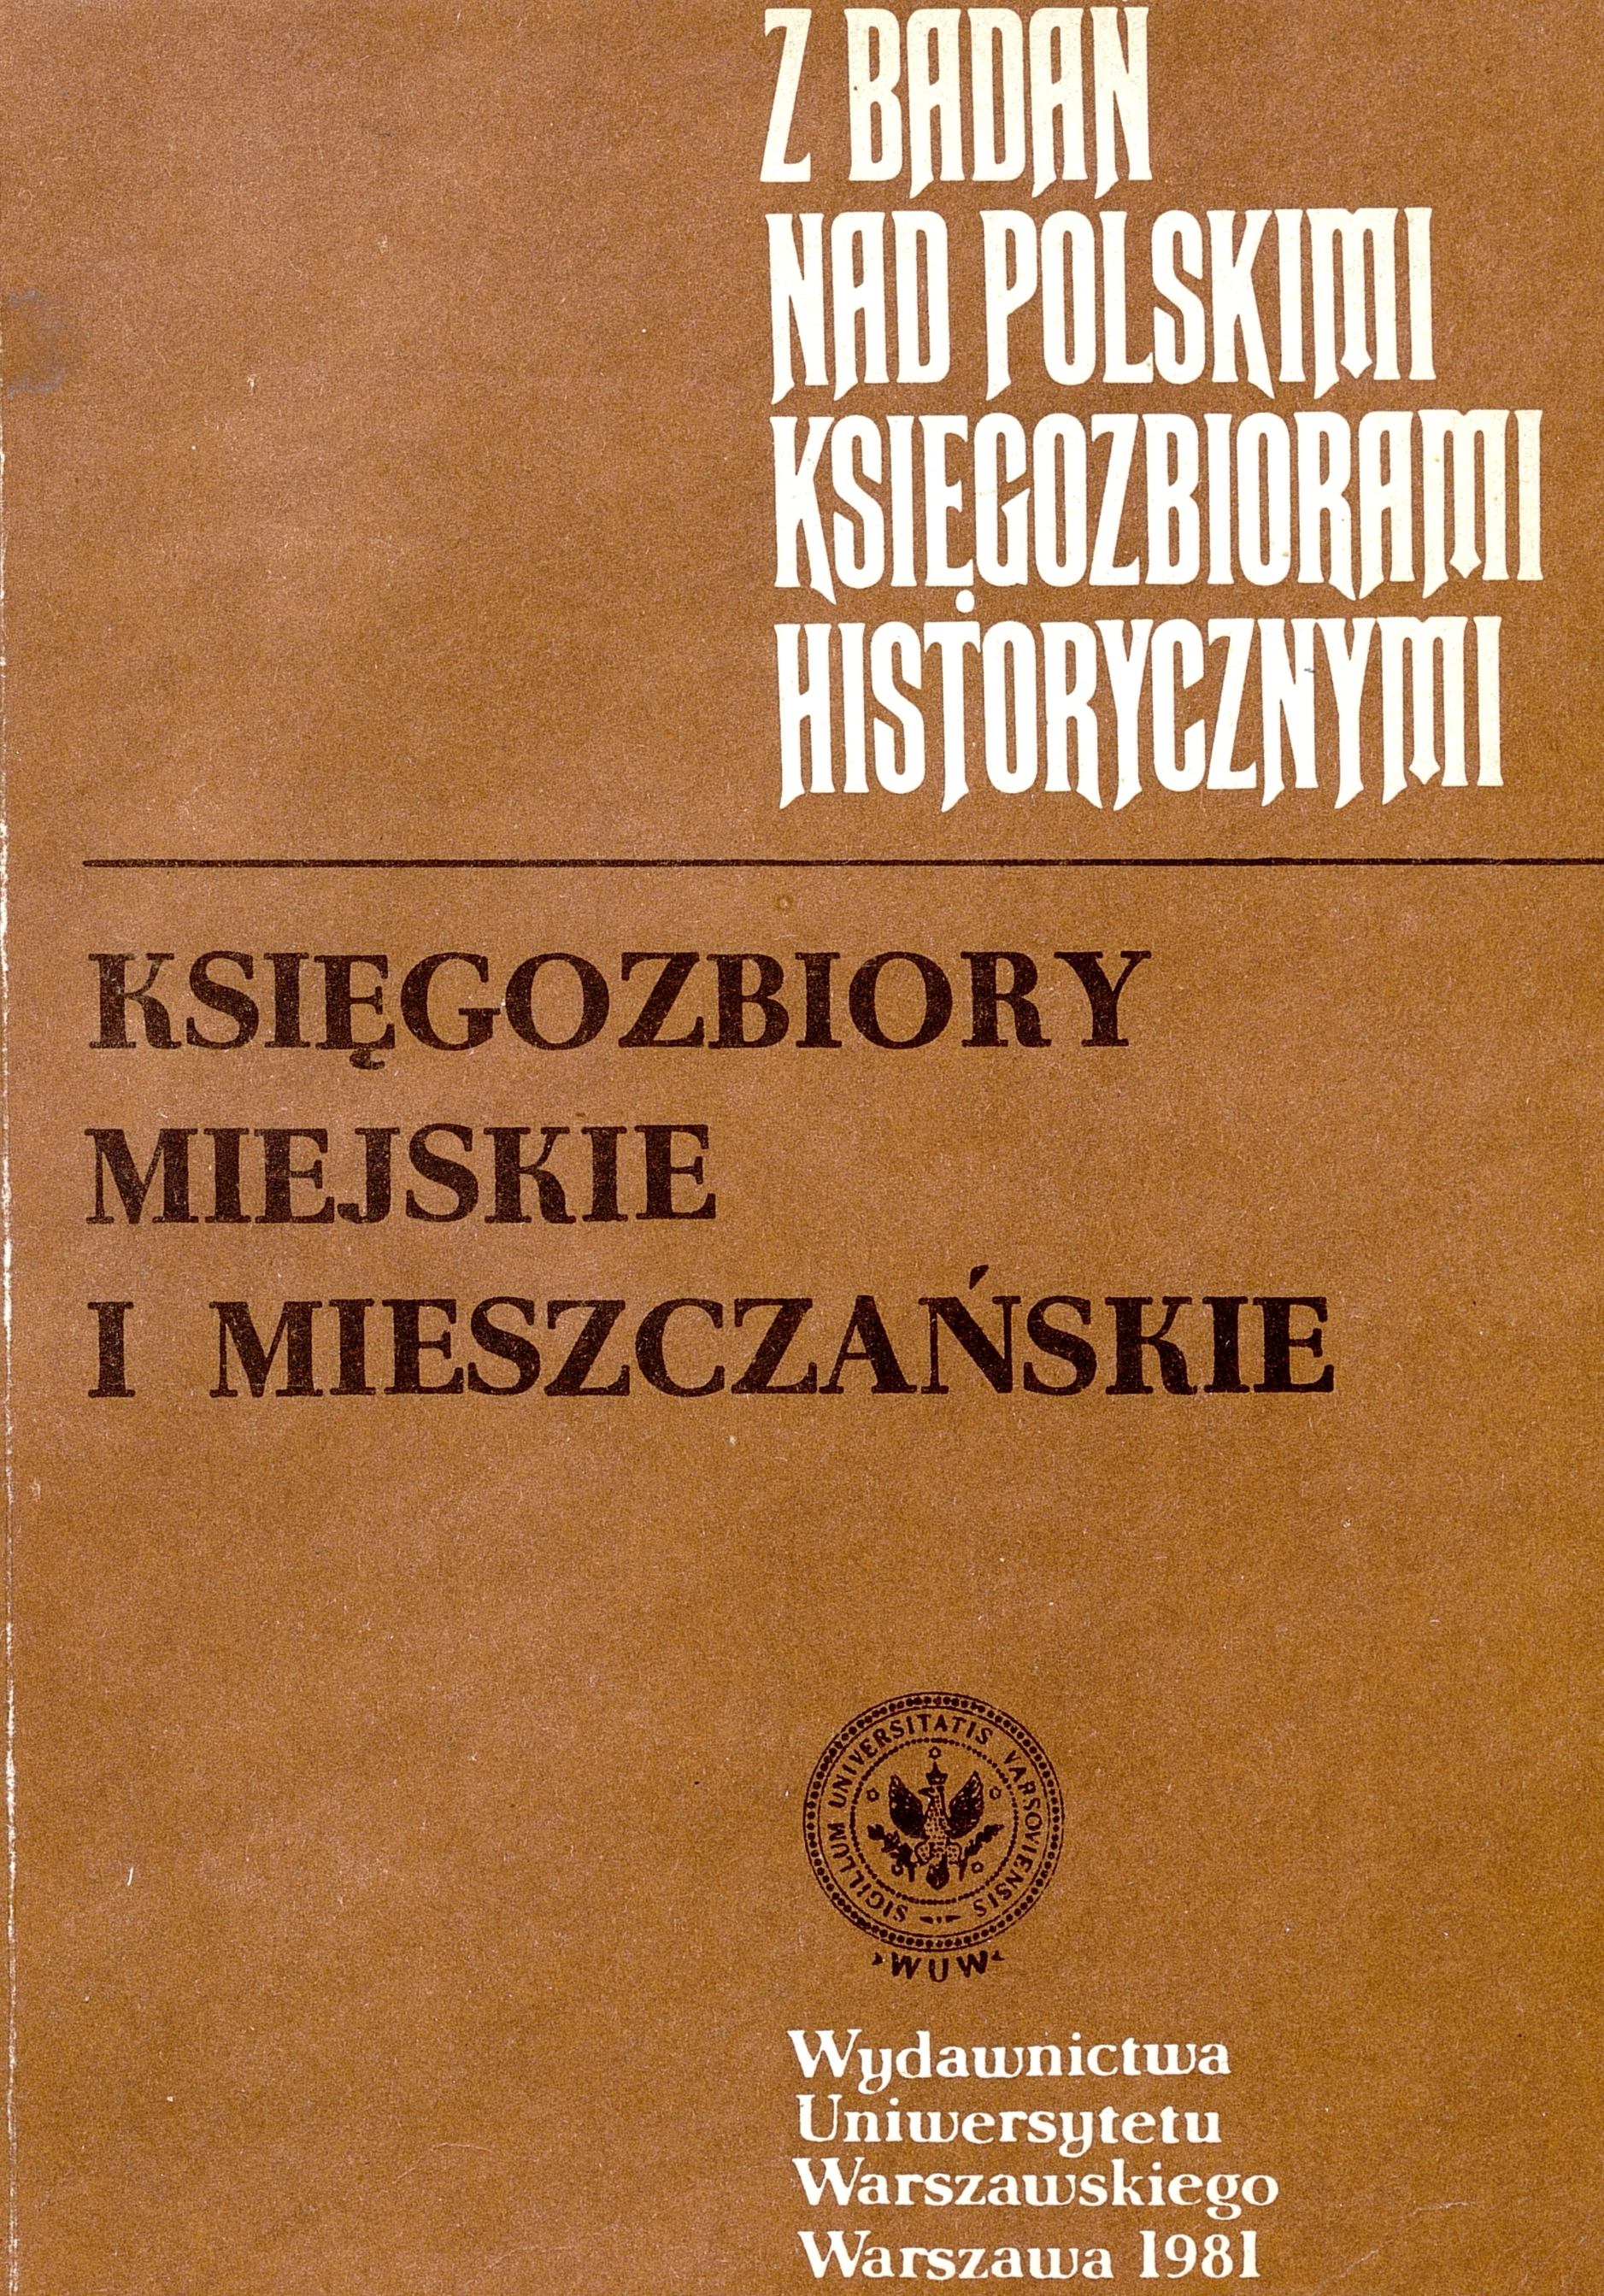 					Pokaż  1981: Z Badań nad Polskimi Księgozbiorami Historycznymi - Zeszyt 6
				